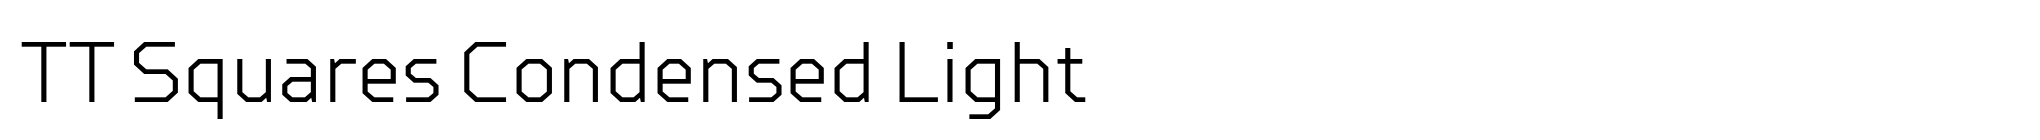 TT Squares Condensed Light image